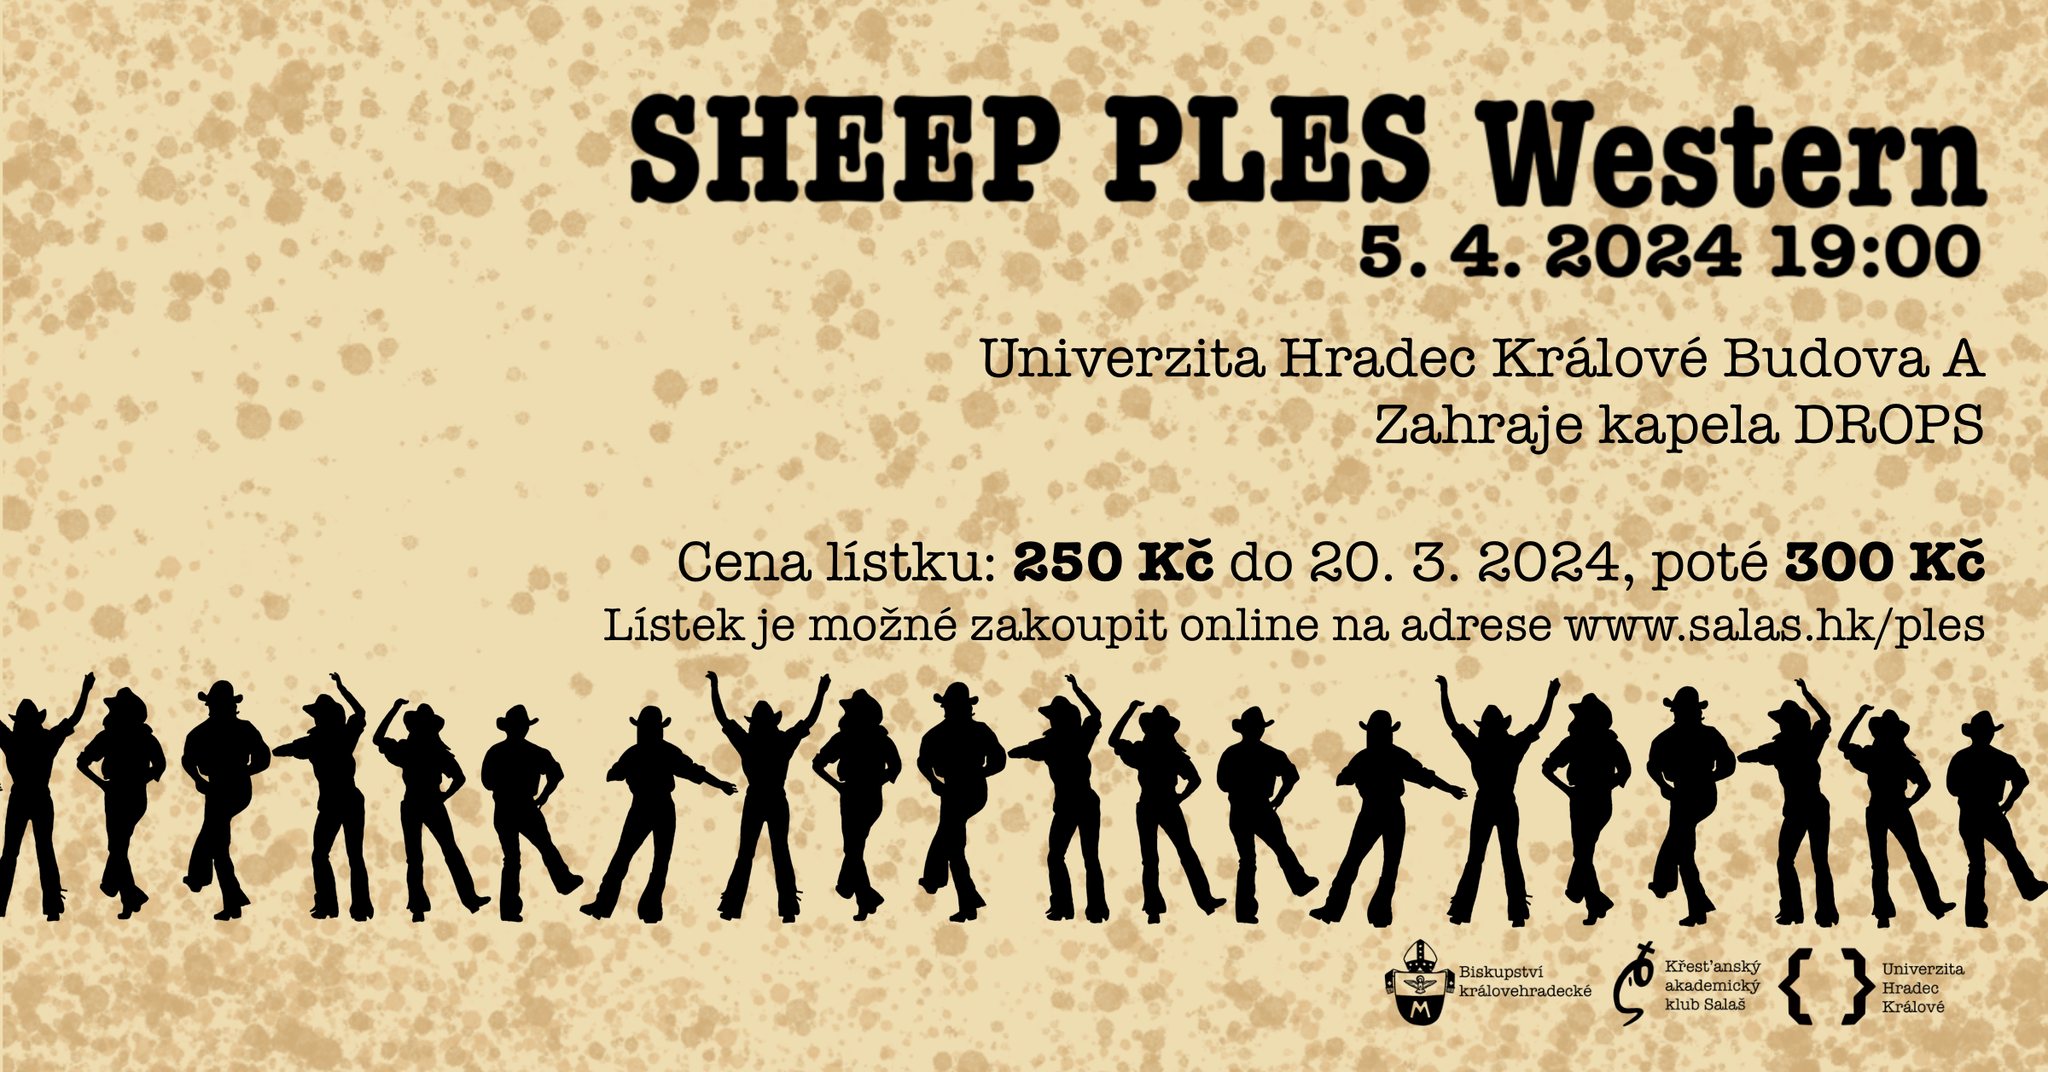 Sheep ples 2024